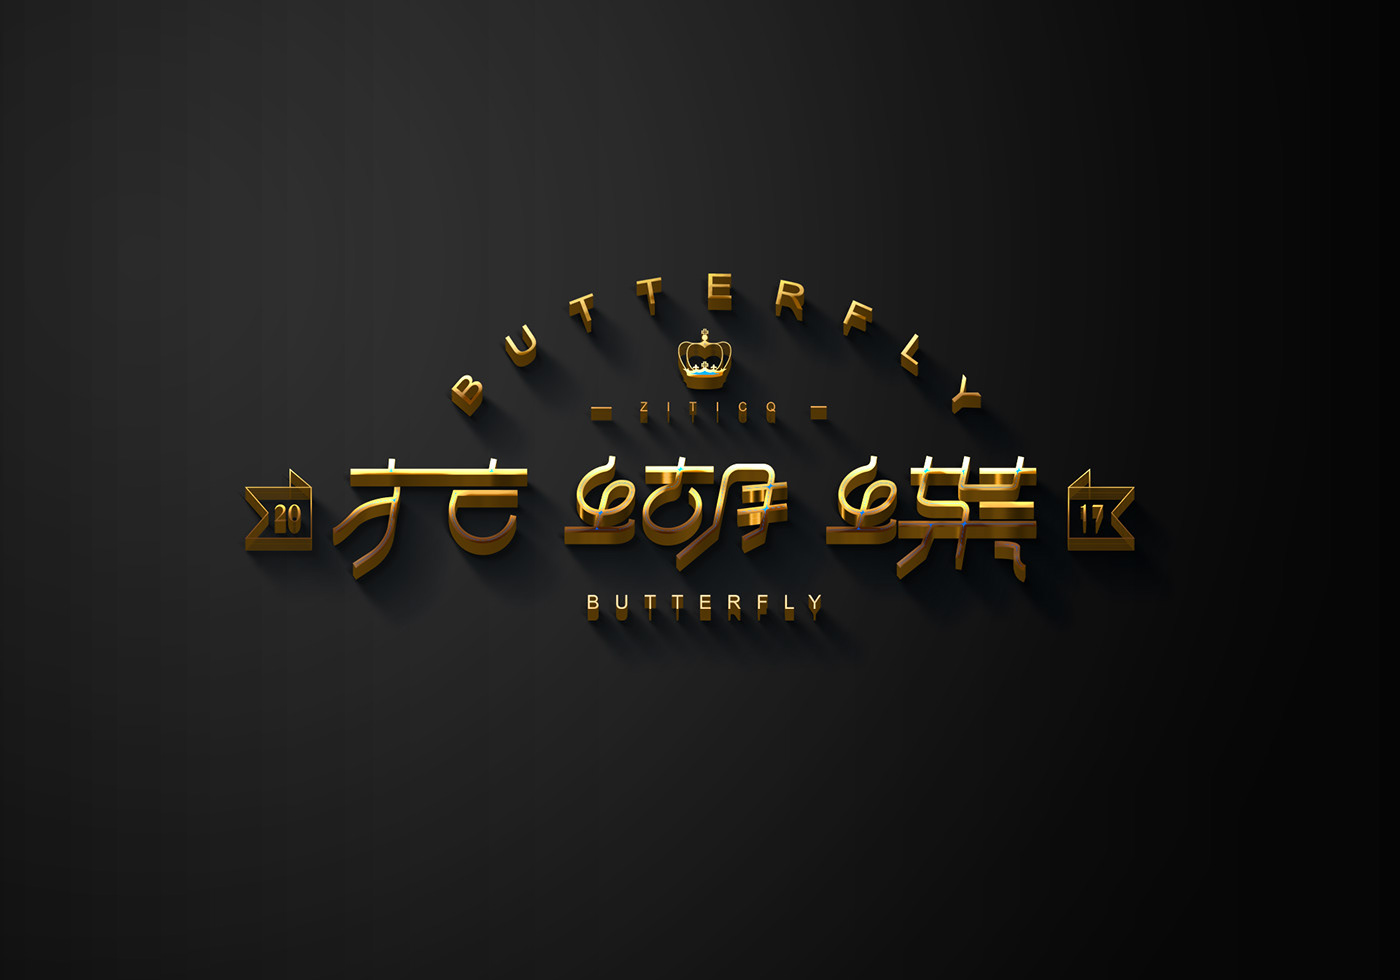 中文字体 字体标志 字体设计 标志设计